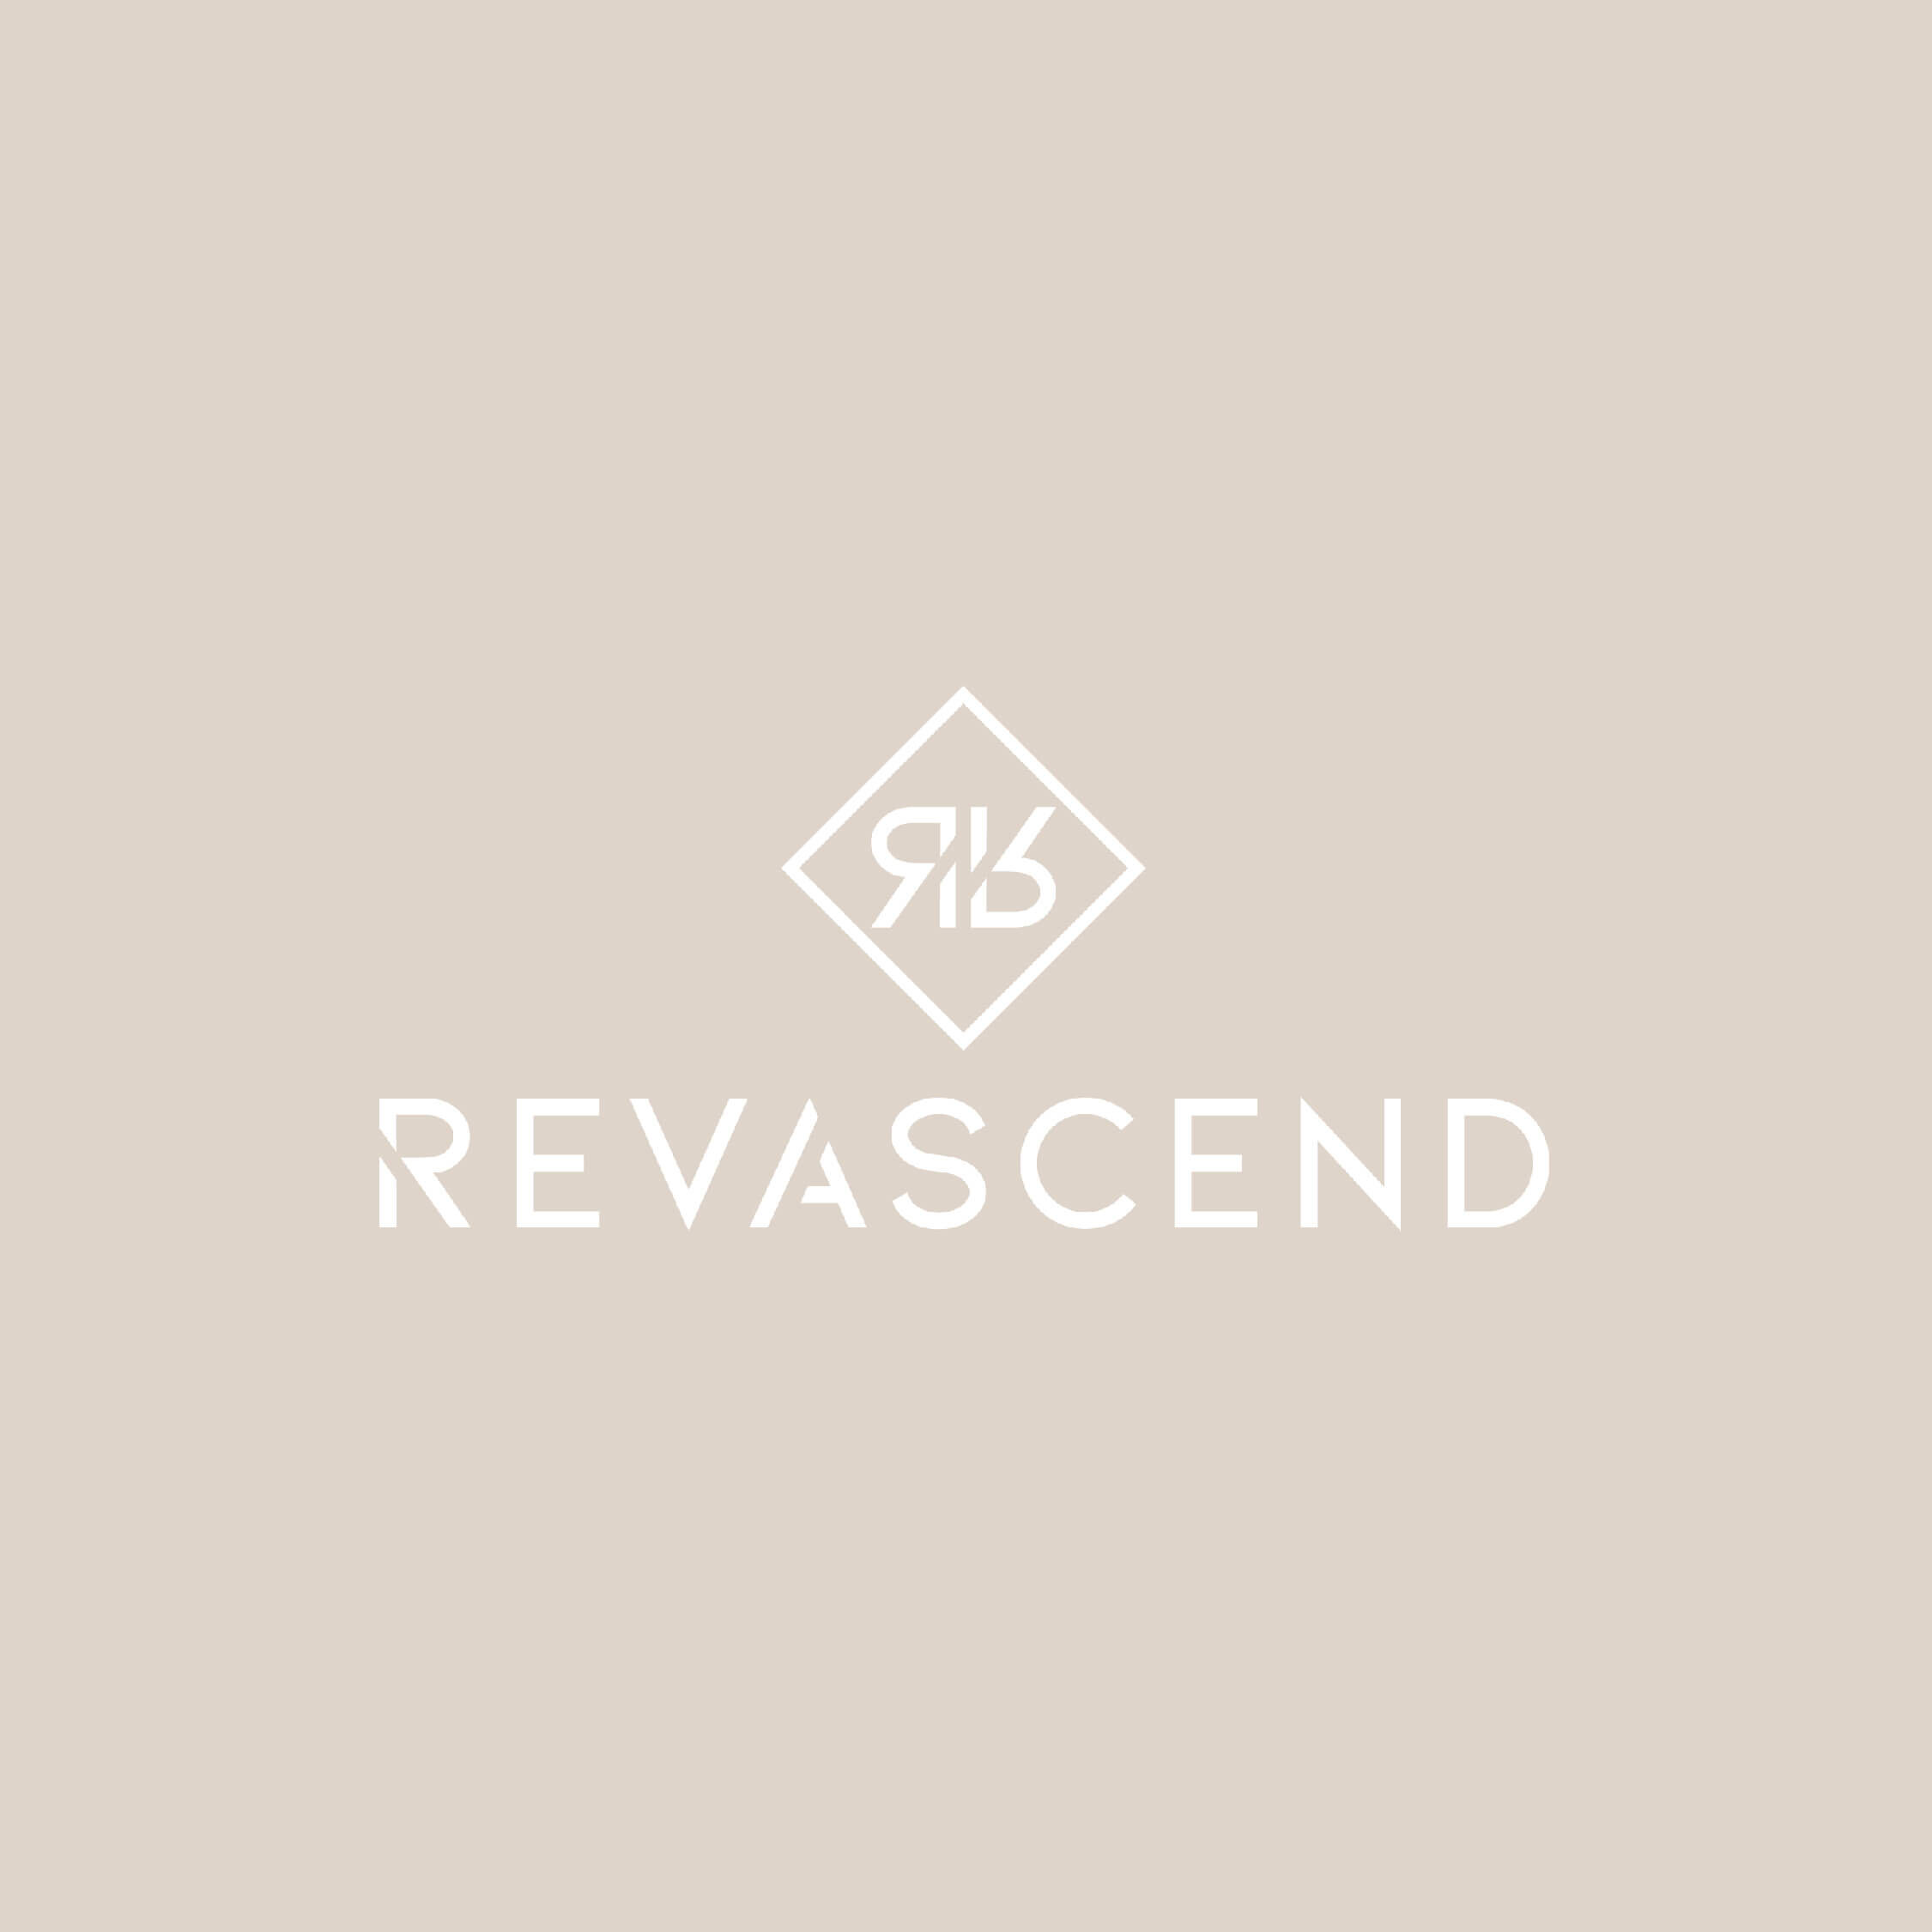 07 - Revascend_20.jpg